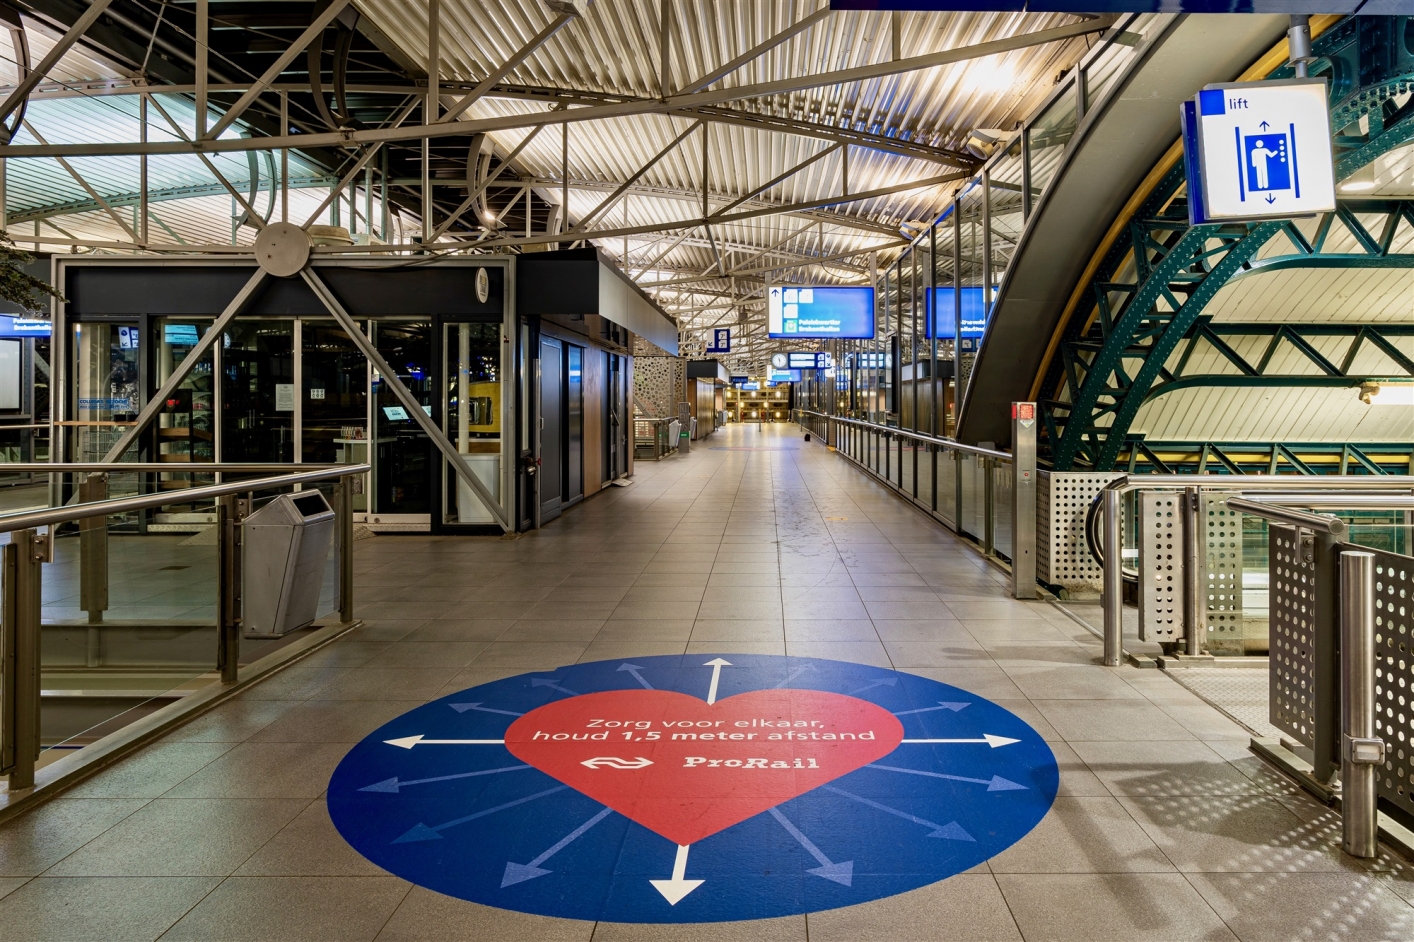 foto van stationstraverse met grote sticker op de grond met tekst 'Zorg voor elkaar, houd 1,5 m afstand'